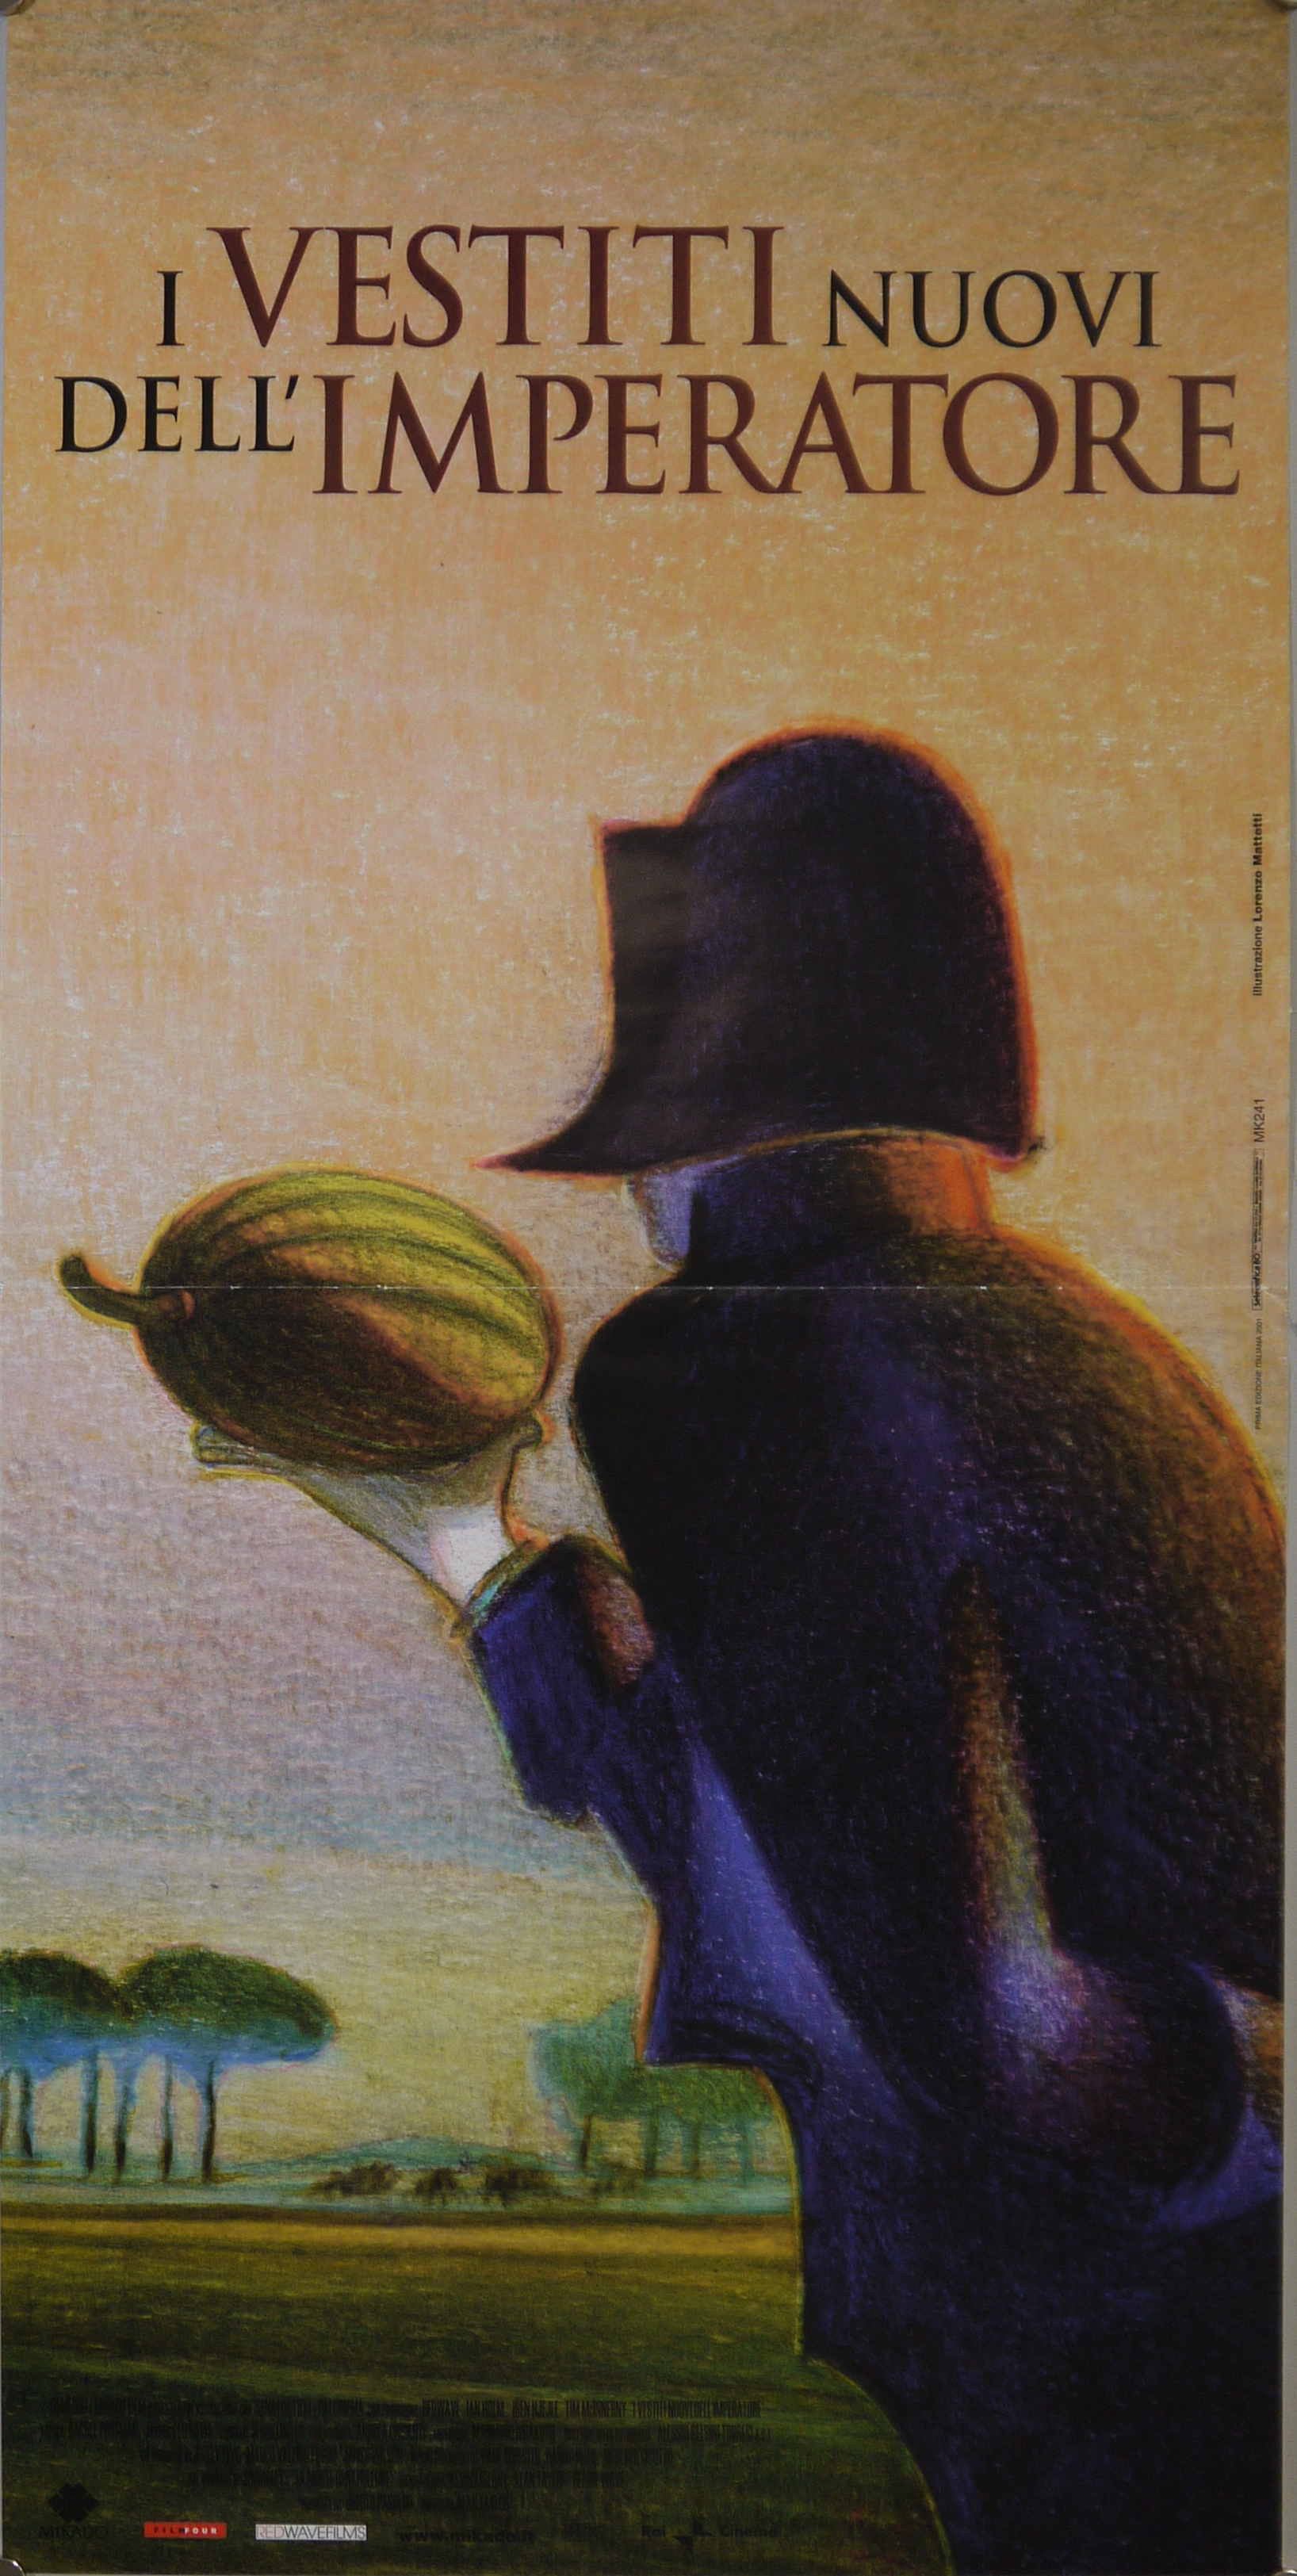 Napoleone di schiena con anguria in mano guarda verso un'ampia pianura (locandina) di Mattotti Lorenzo - ambito inglese (inizio XXI)